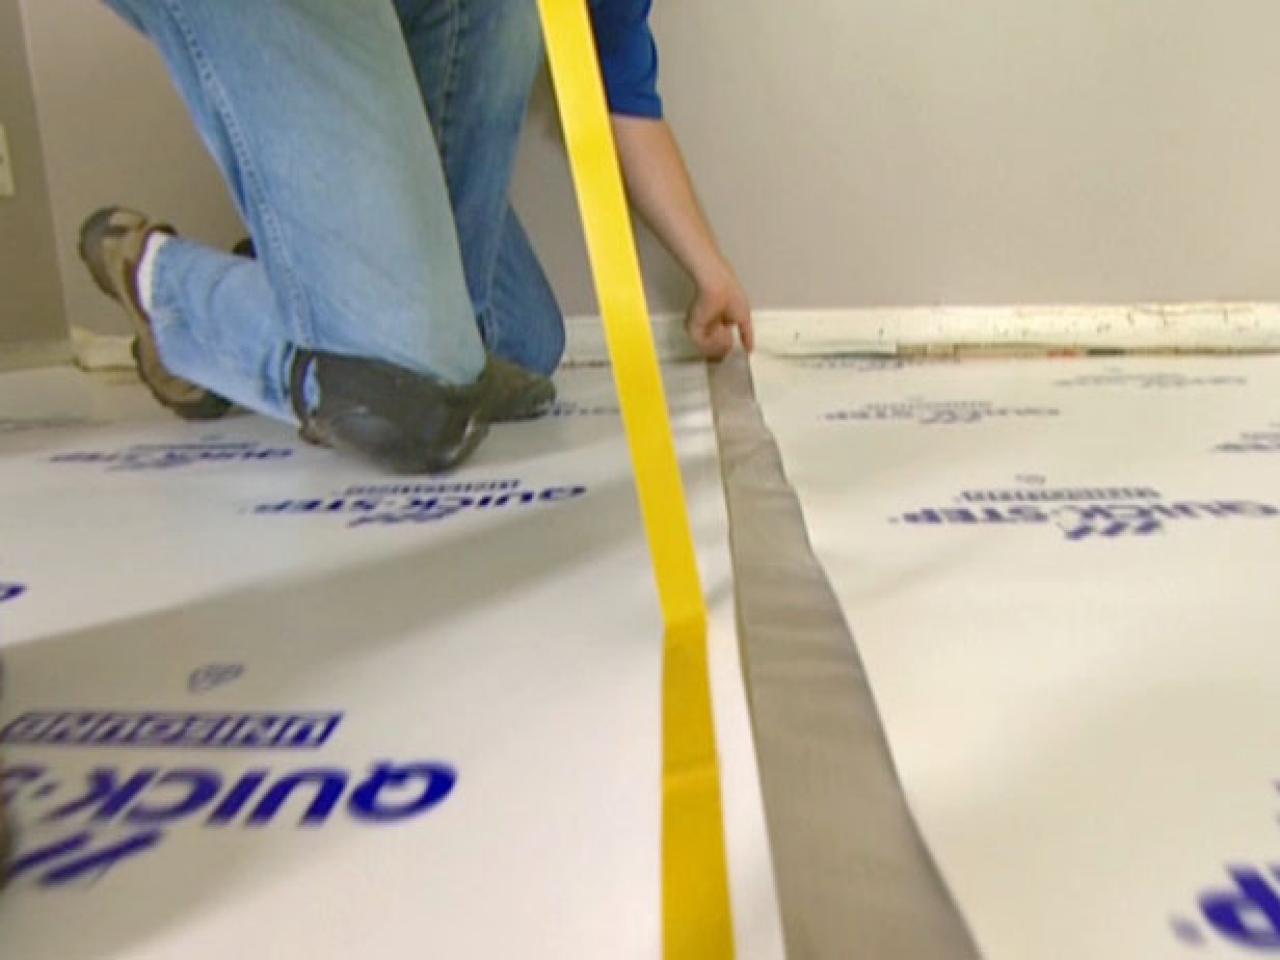 Laminate Flooring, Vinyl Plank Flooring Installation Underlayment